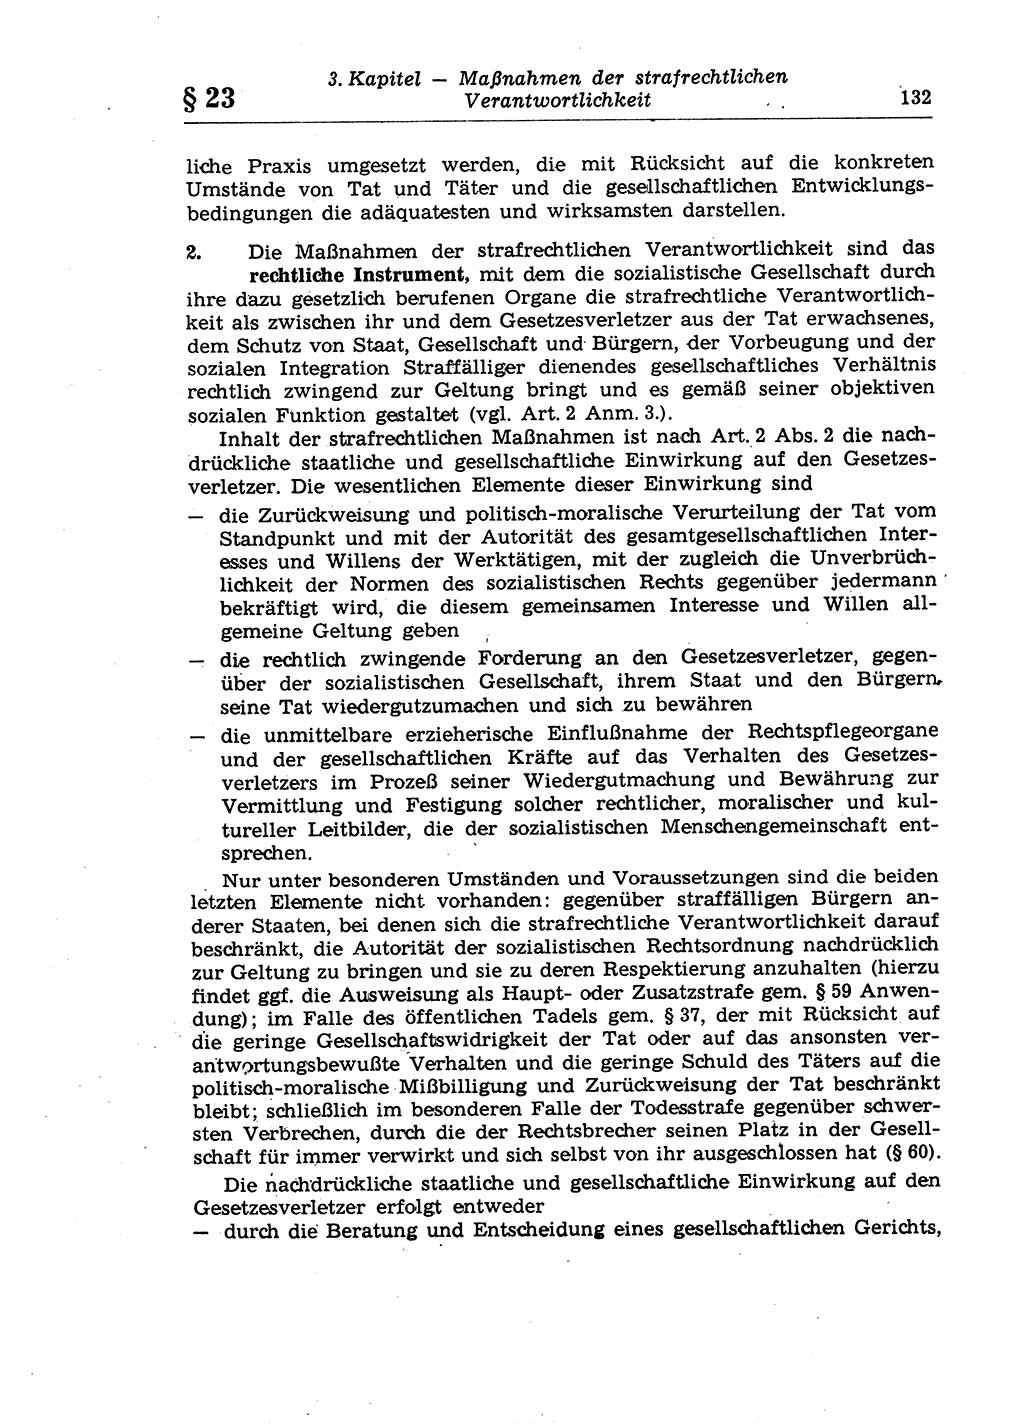 Strafrecht der Deutschen Demokratischen Republik (DDR), Lehrkommentar zum Strafgesetzbuch (StGB), Allgemeiner Teil 1970, Seite 132 (Strafr. DDR Lehrkomm. StGB AT 1970, S. 132)